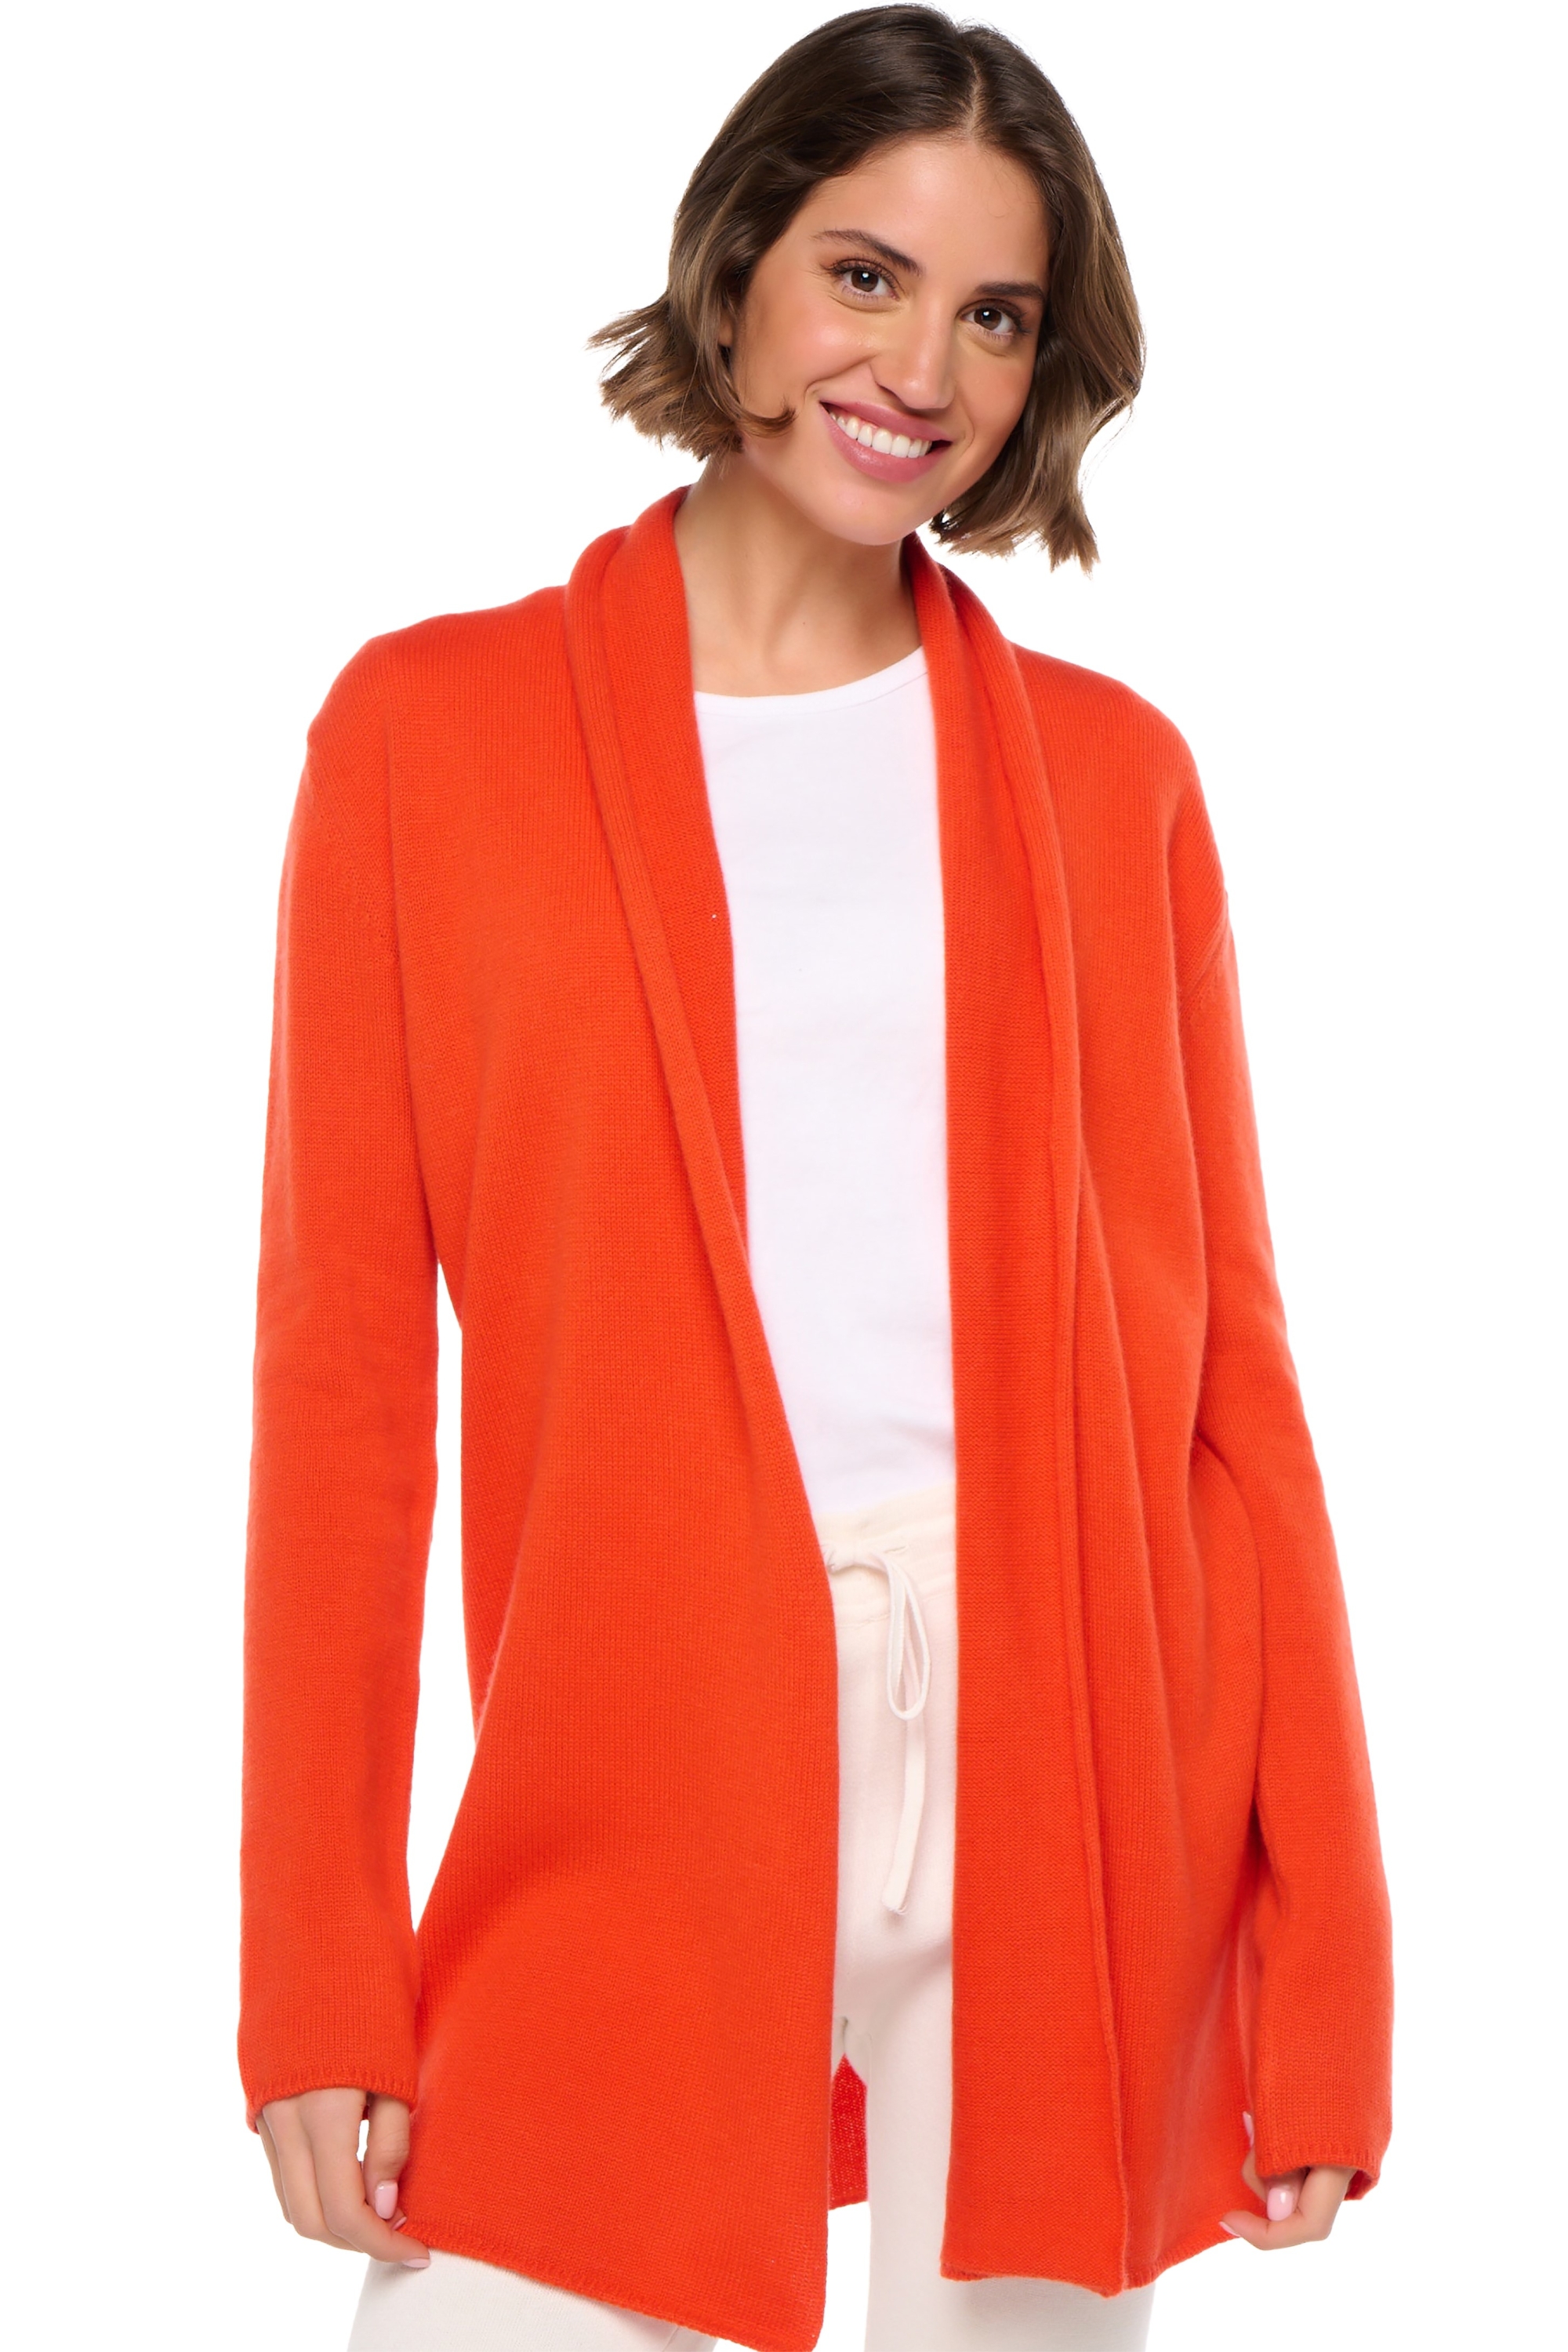 Cashmere cashmere donna maglioni in filato grosso fauve bloody orange 2xl